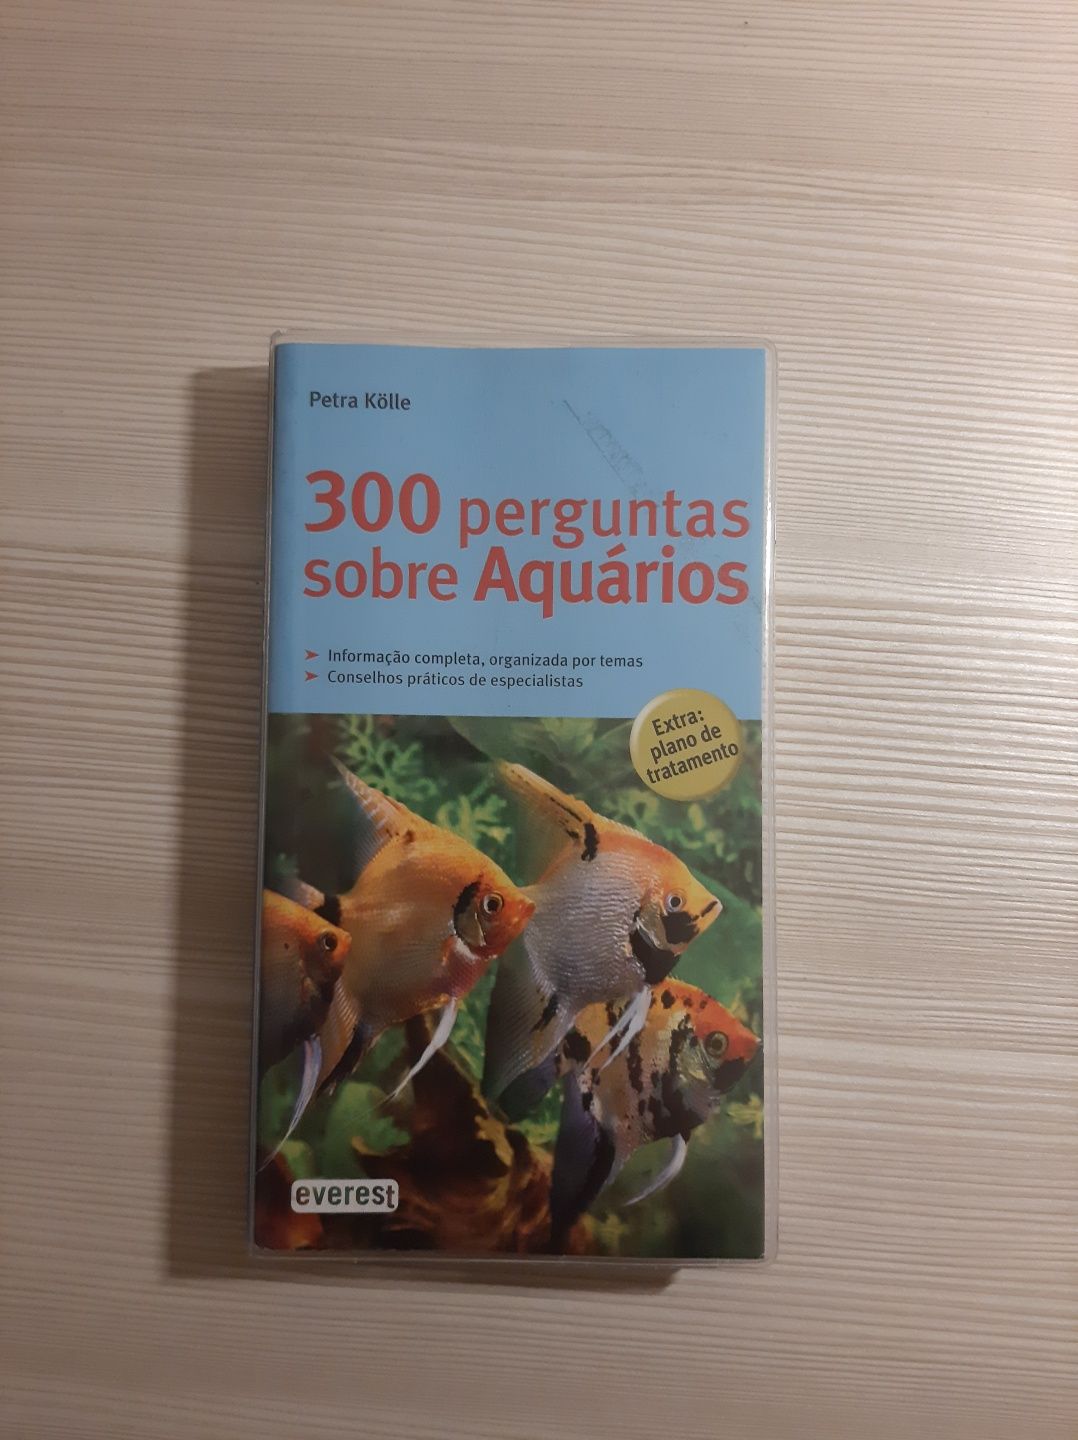 Livros de aquários